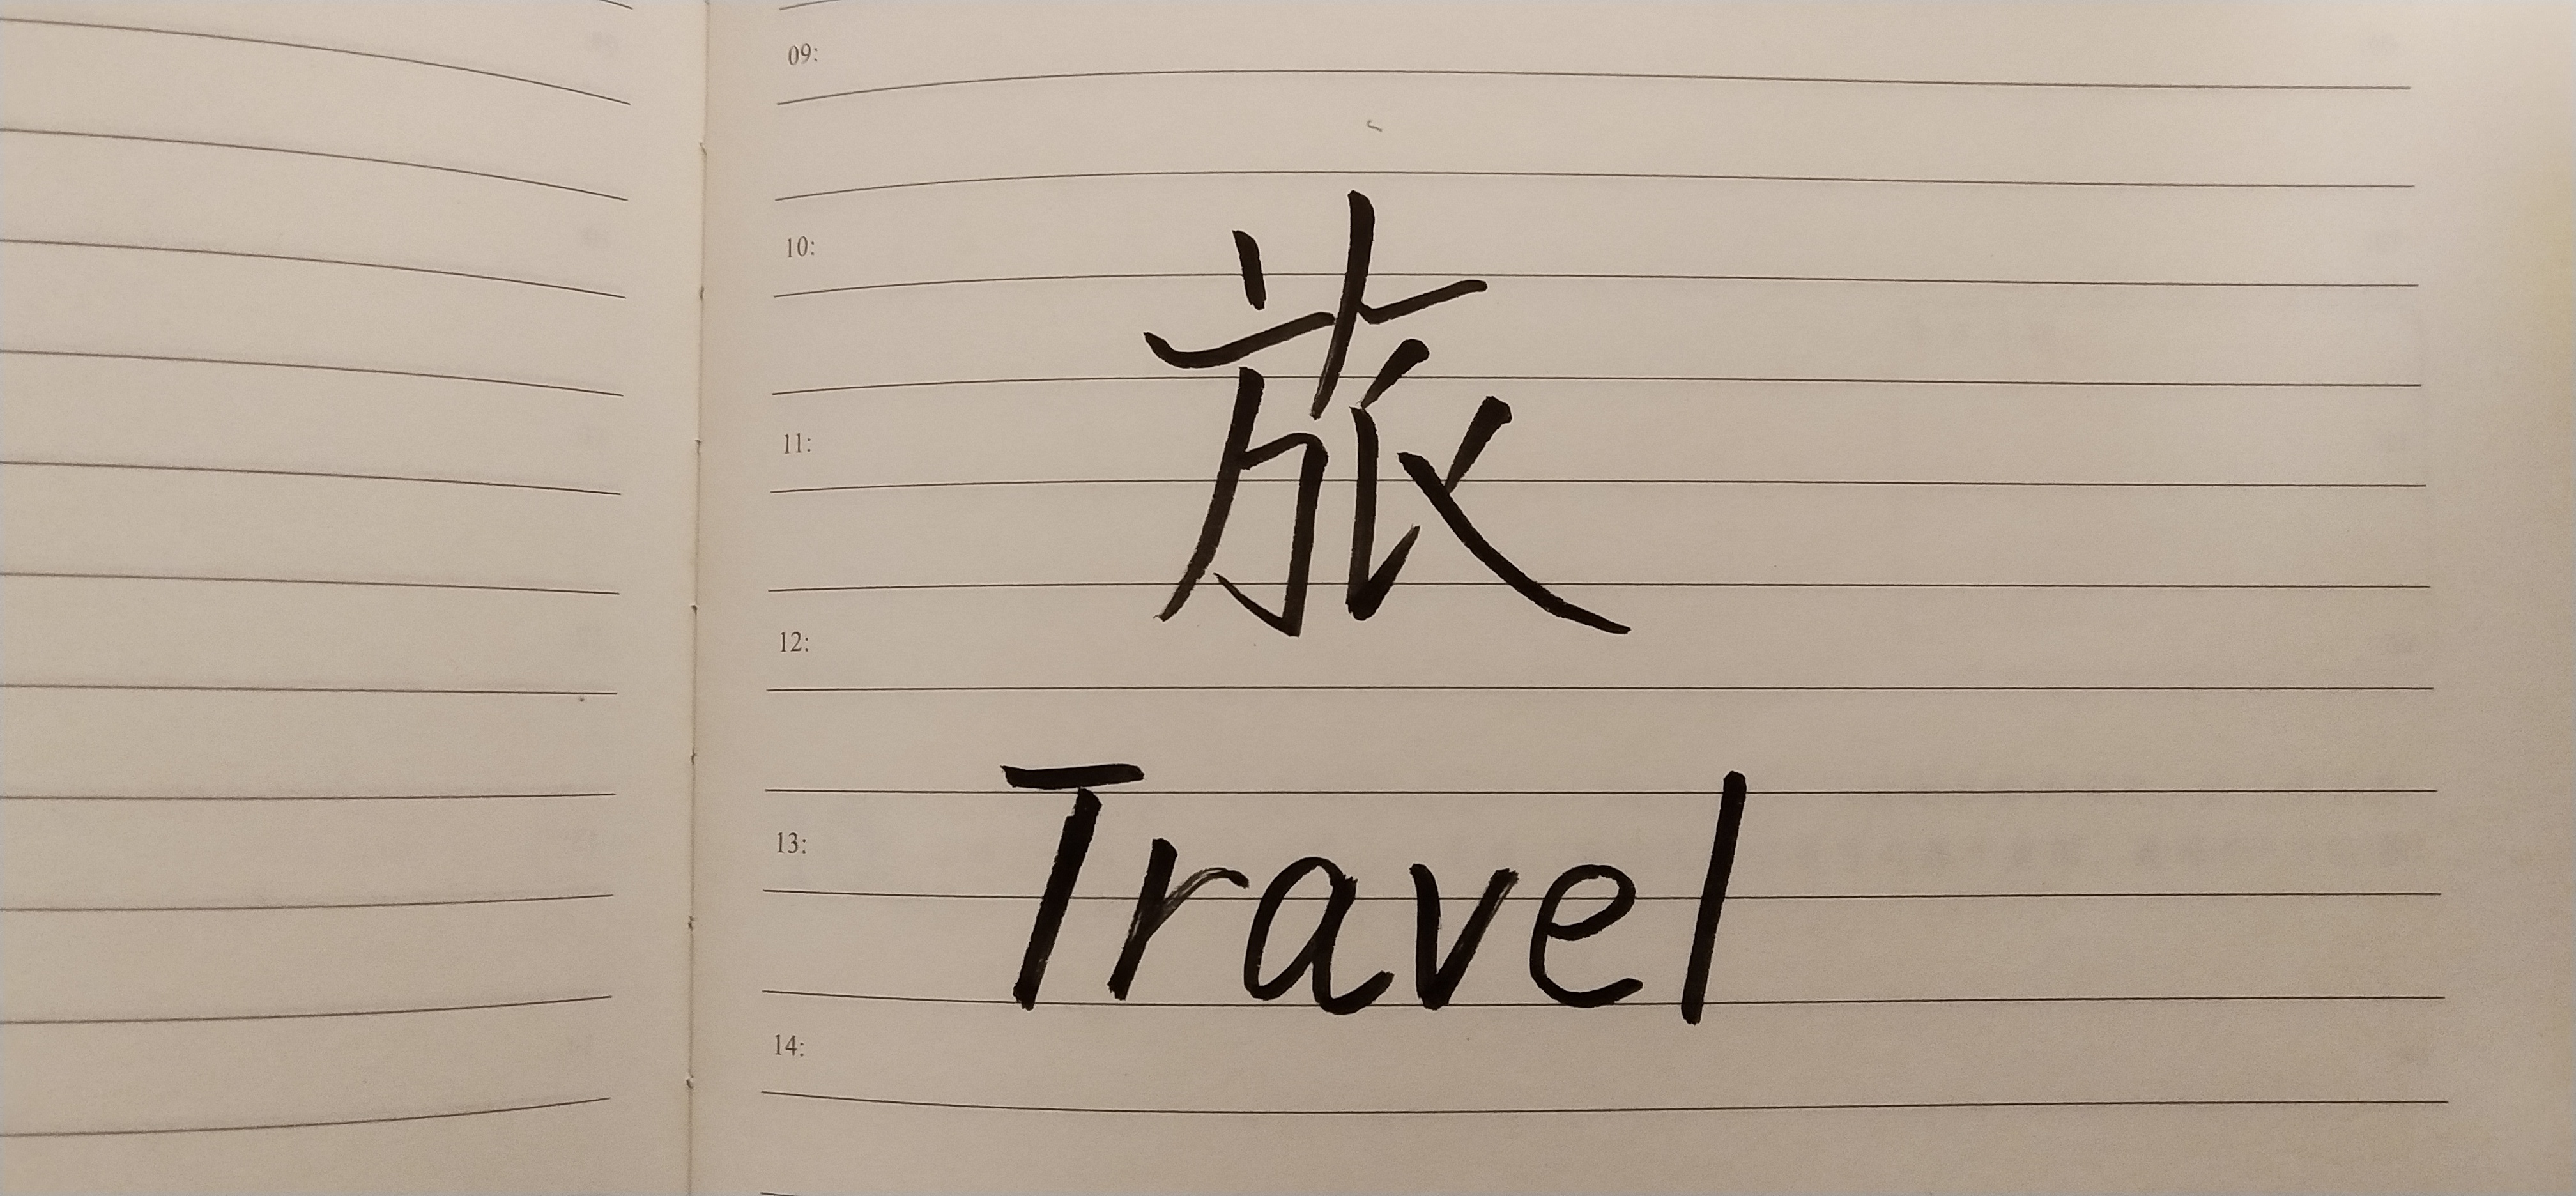 Handwritten travel's Chinese character